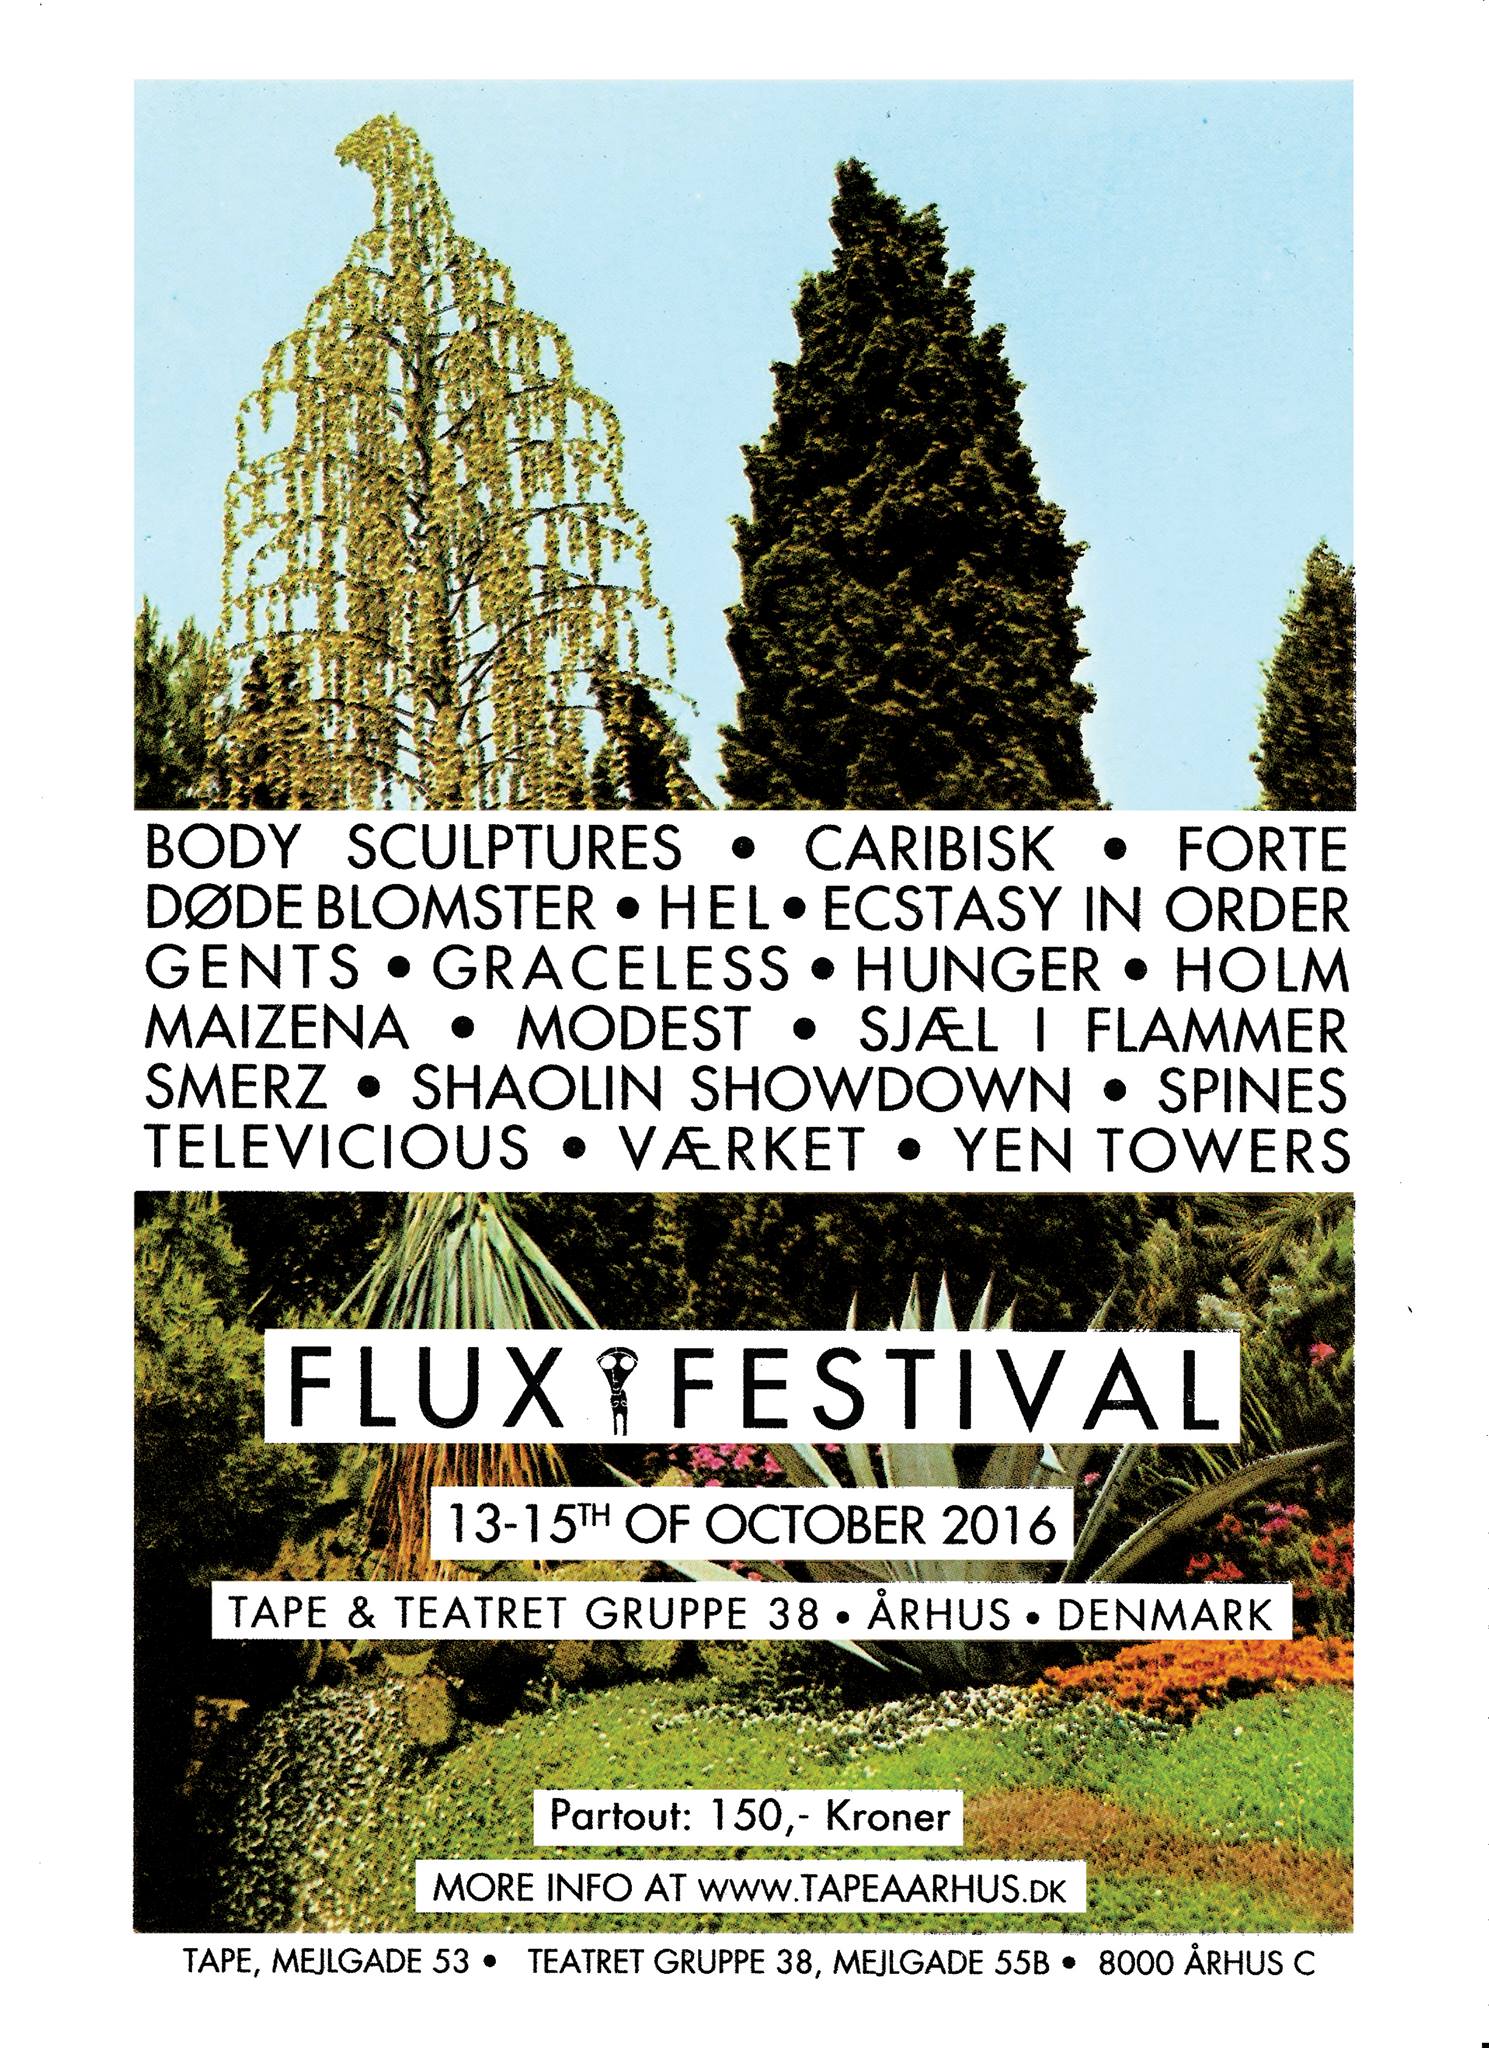 Flux Festival